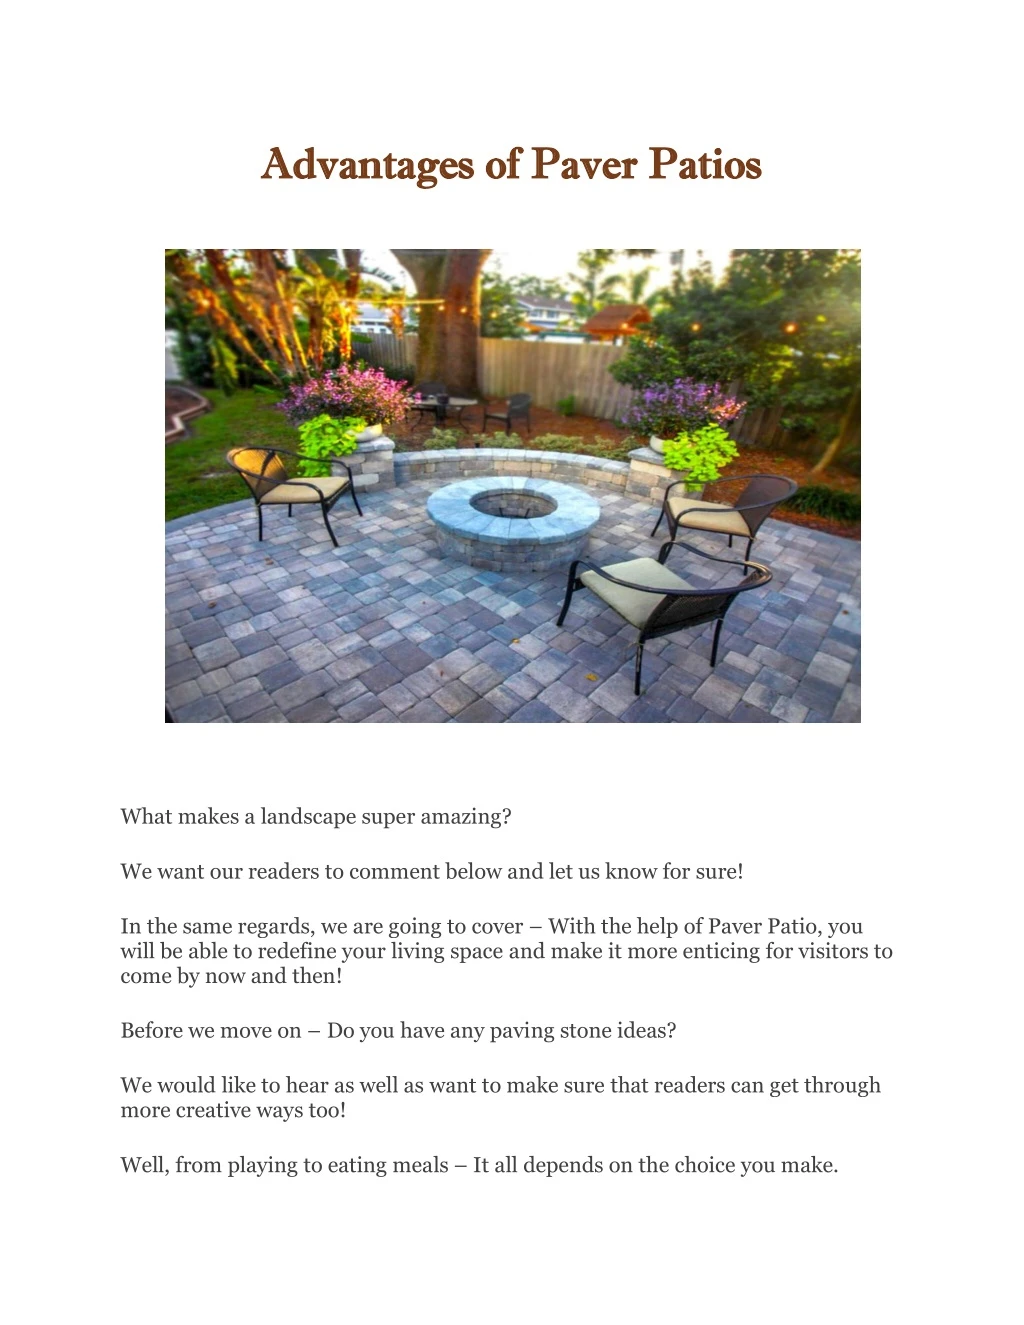 advantages of paver patios advantages of paver